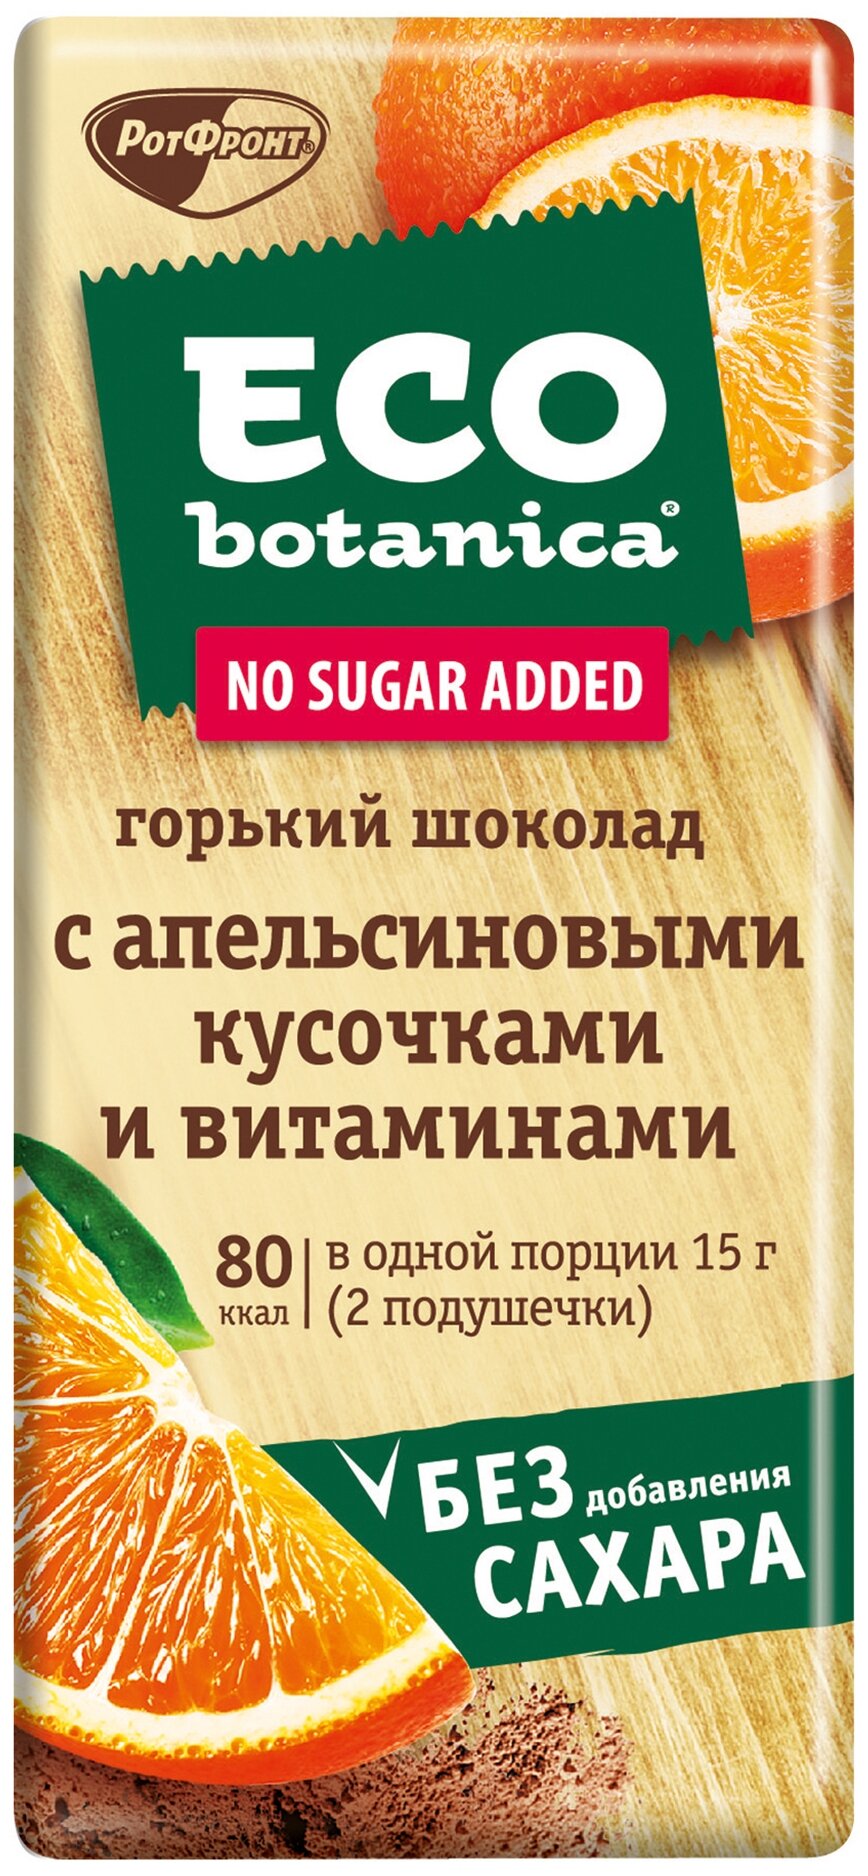 Eco botanica "С апельсиновыми кусочками и витаминами" - содержание какао: 58.7 %